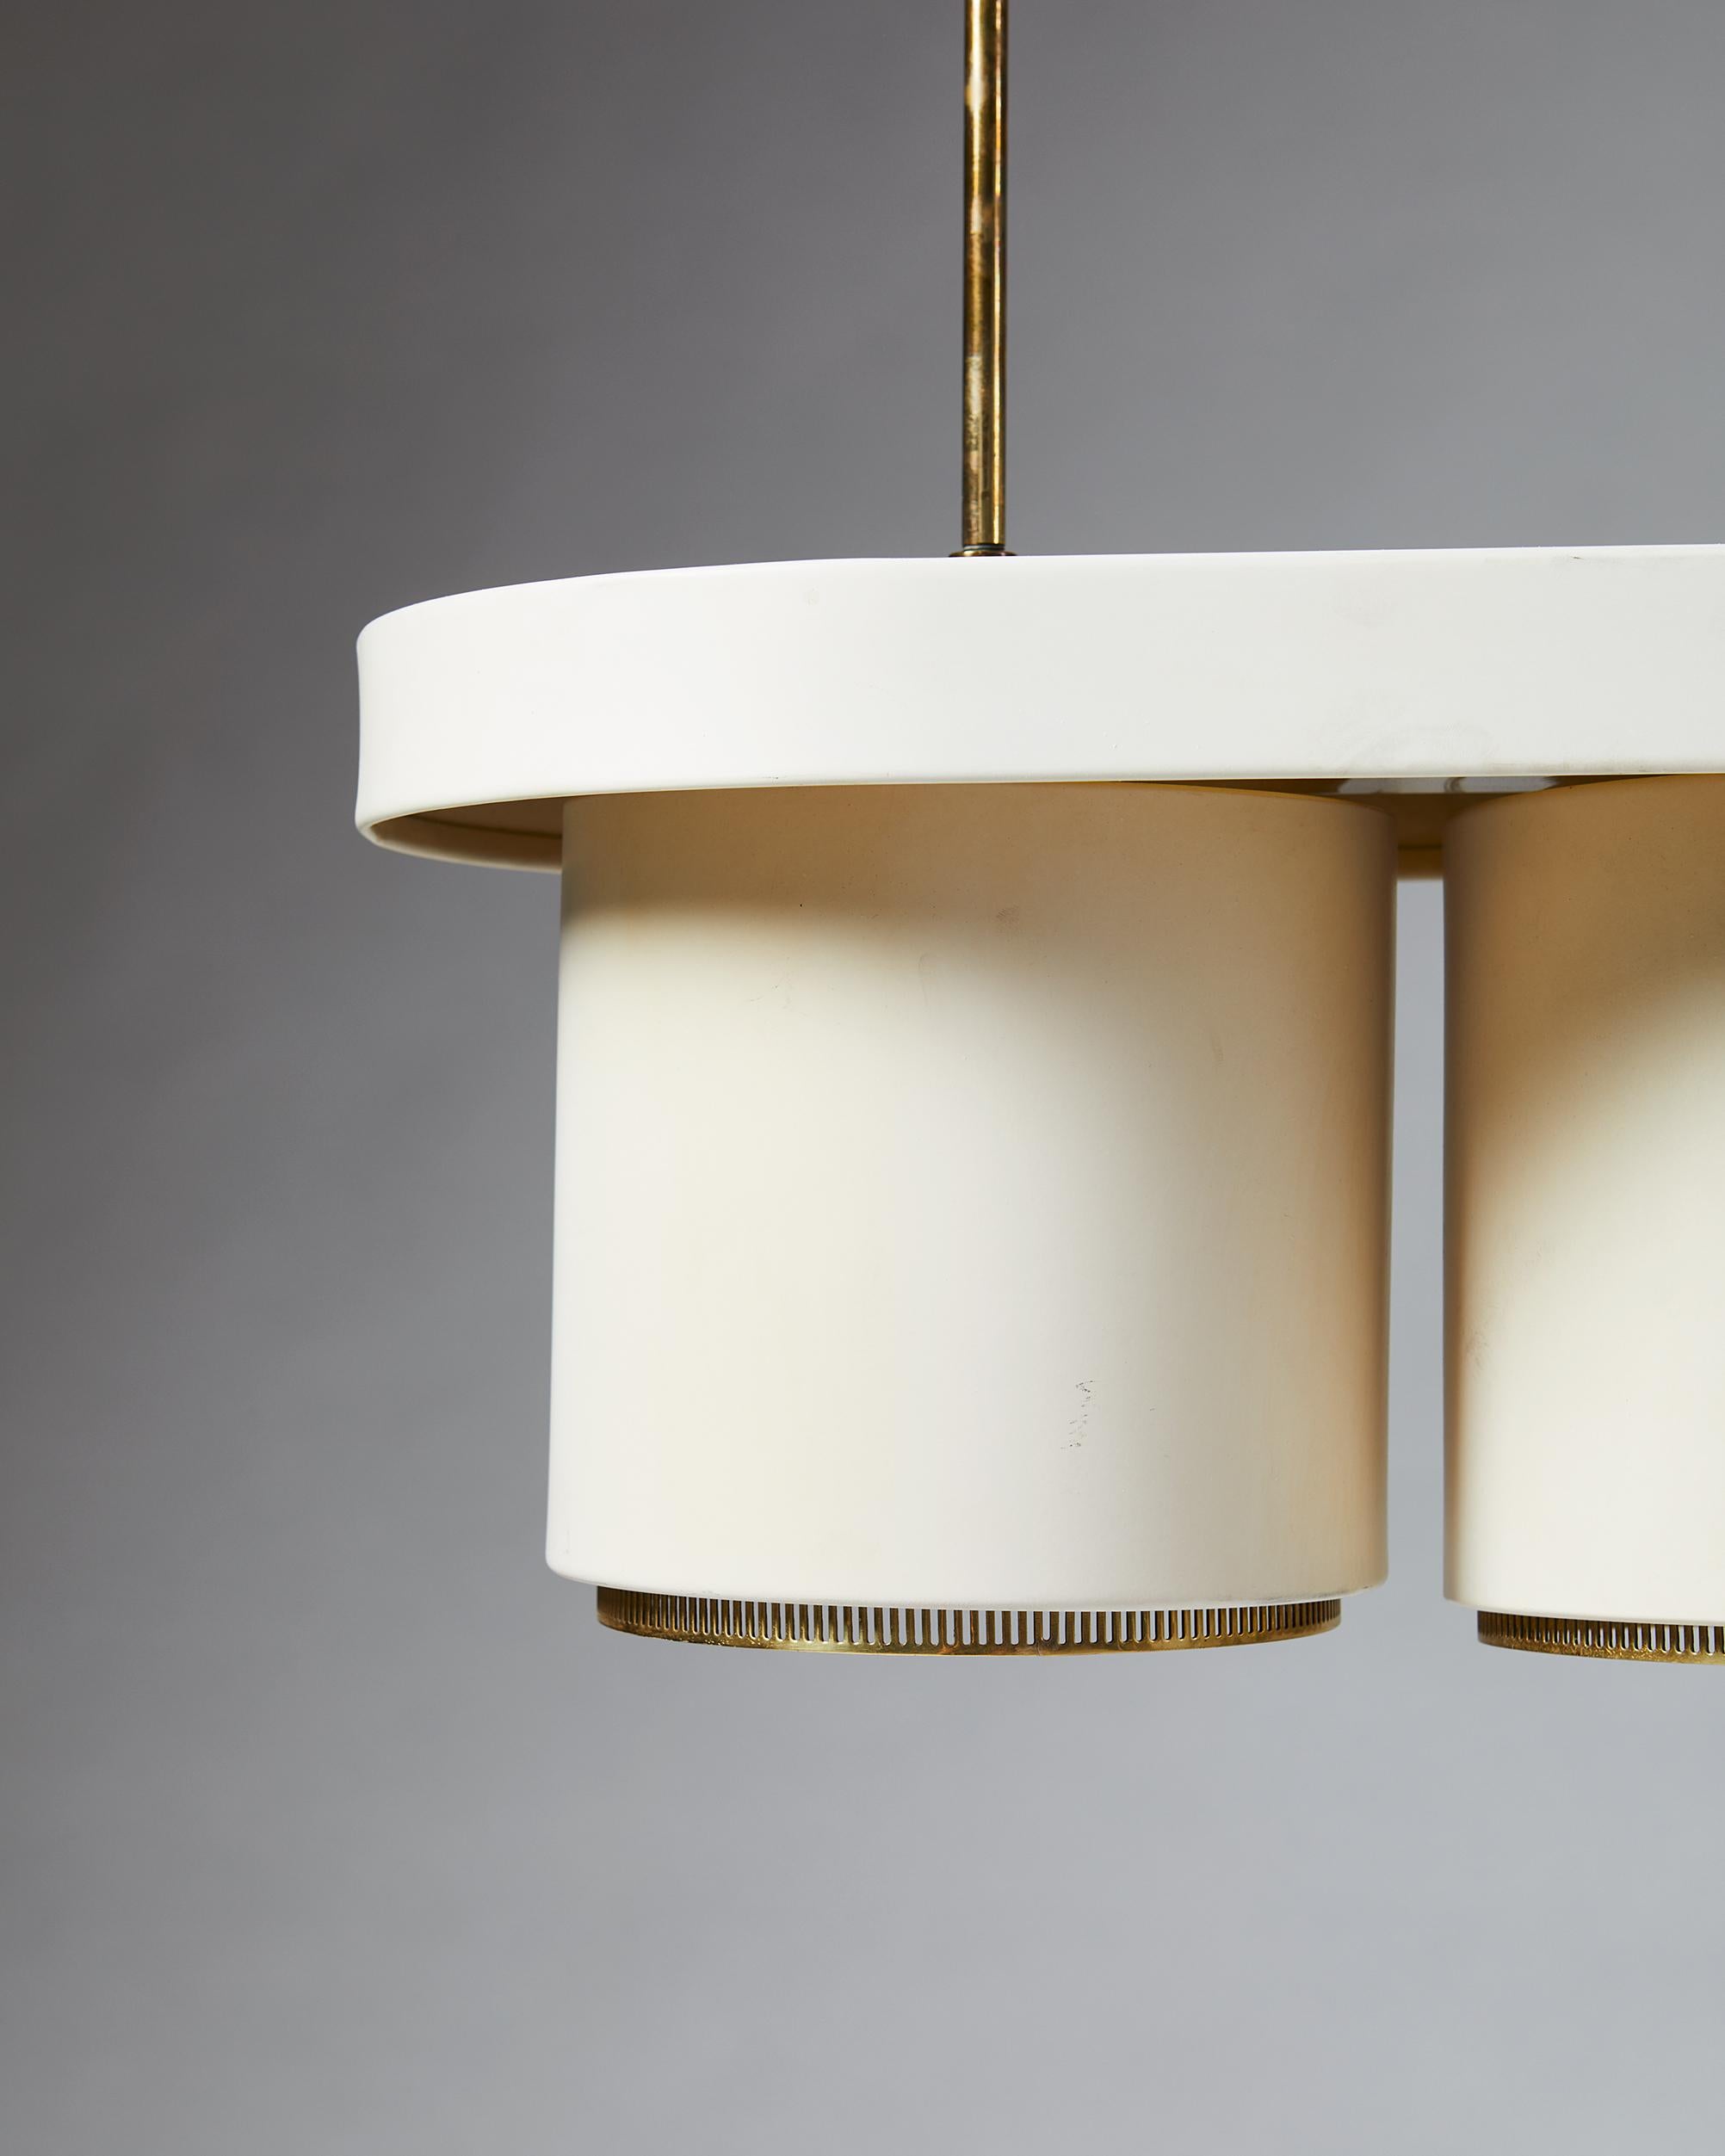 Finnish Ceiling Lamp, Model A203, Designed by Alvar Aalto for Valaistustyö